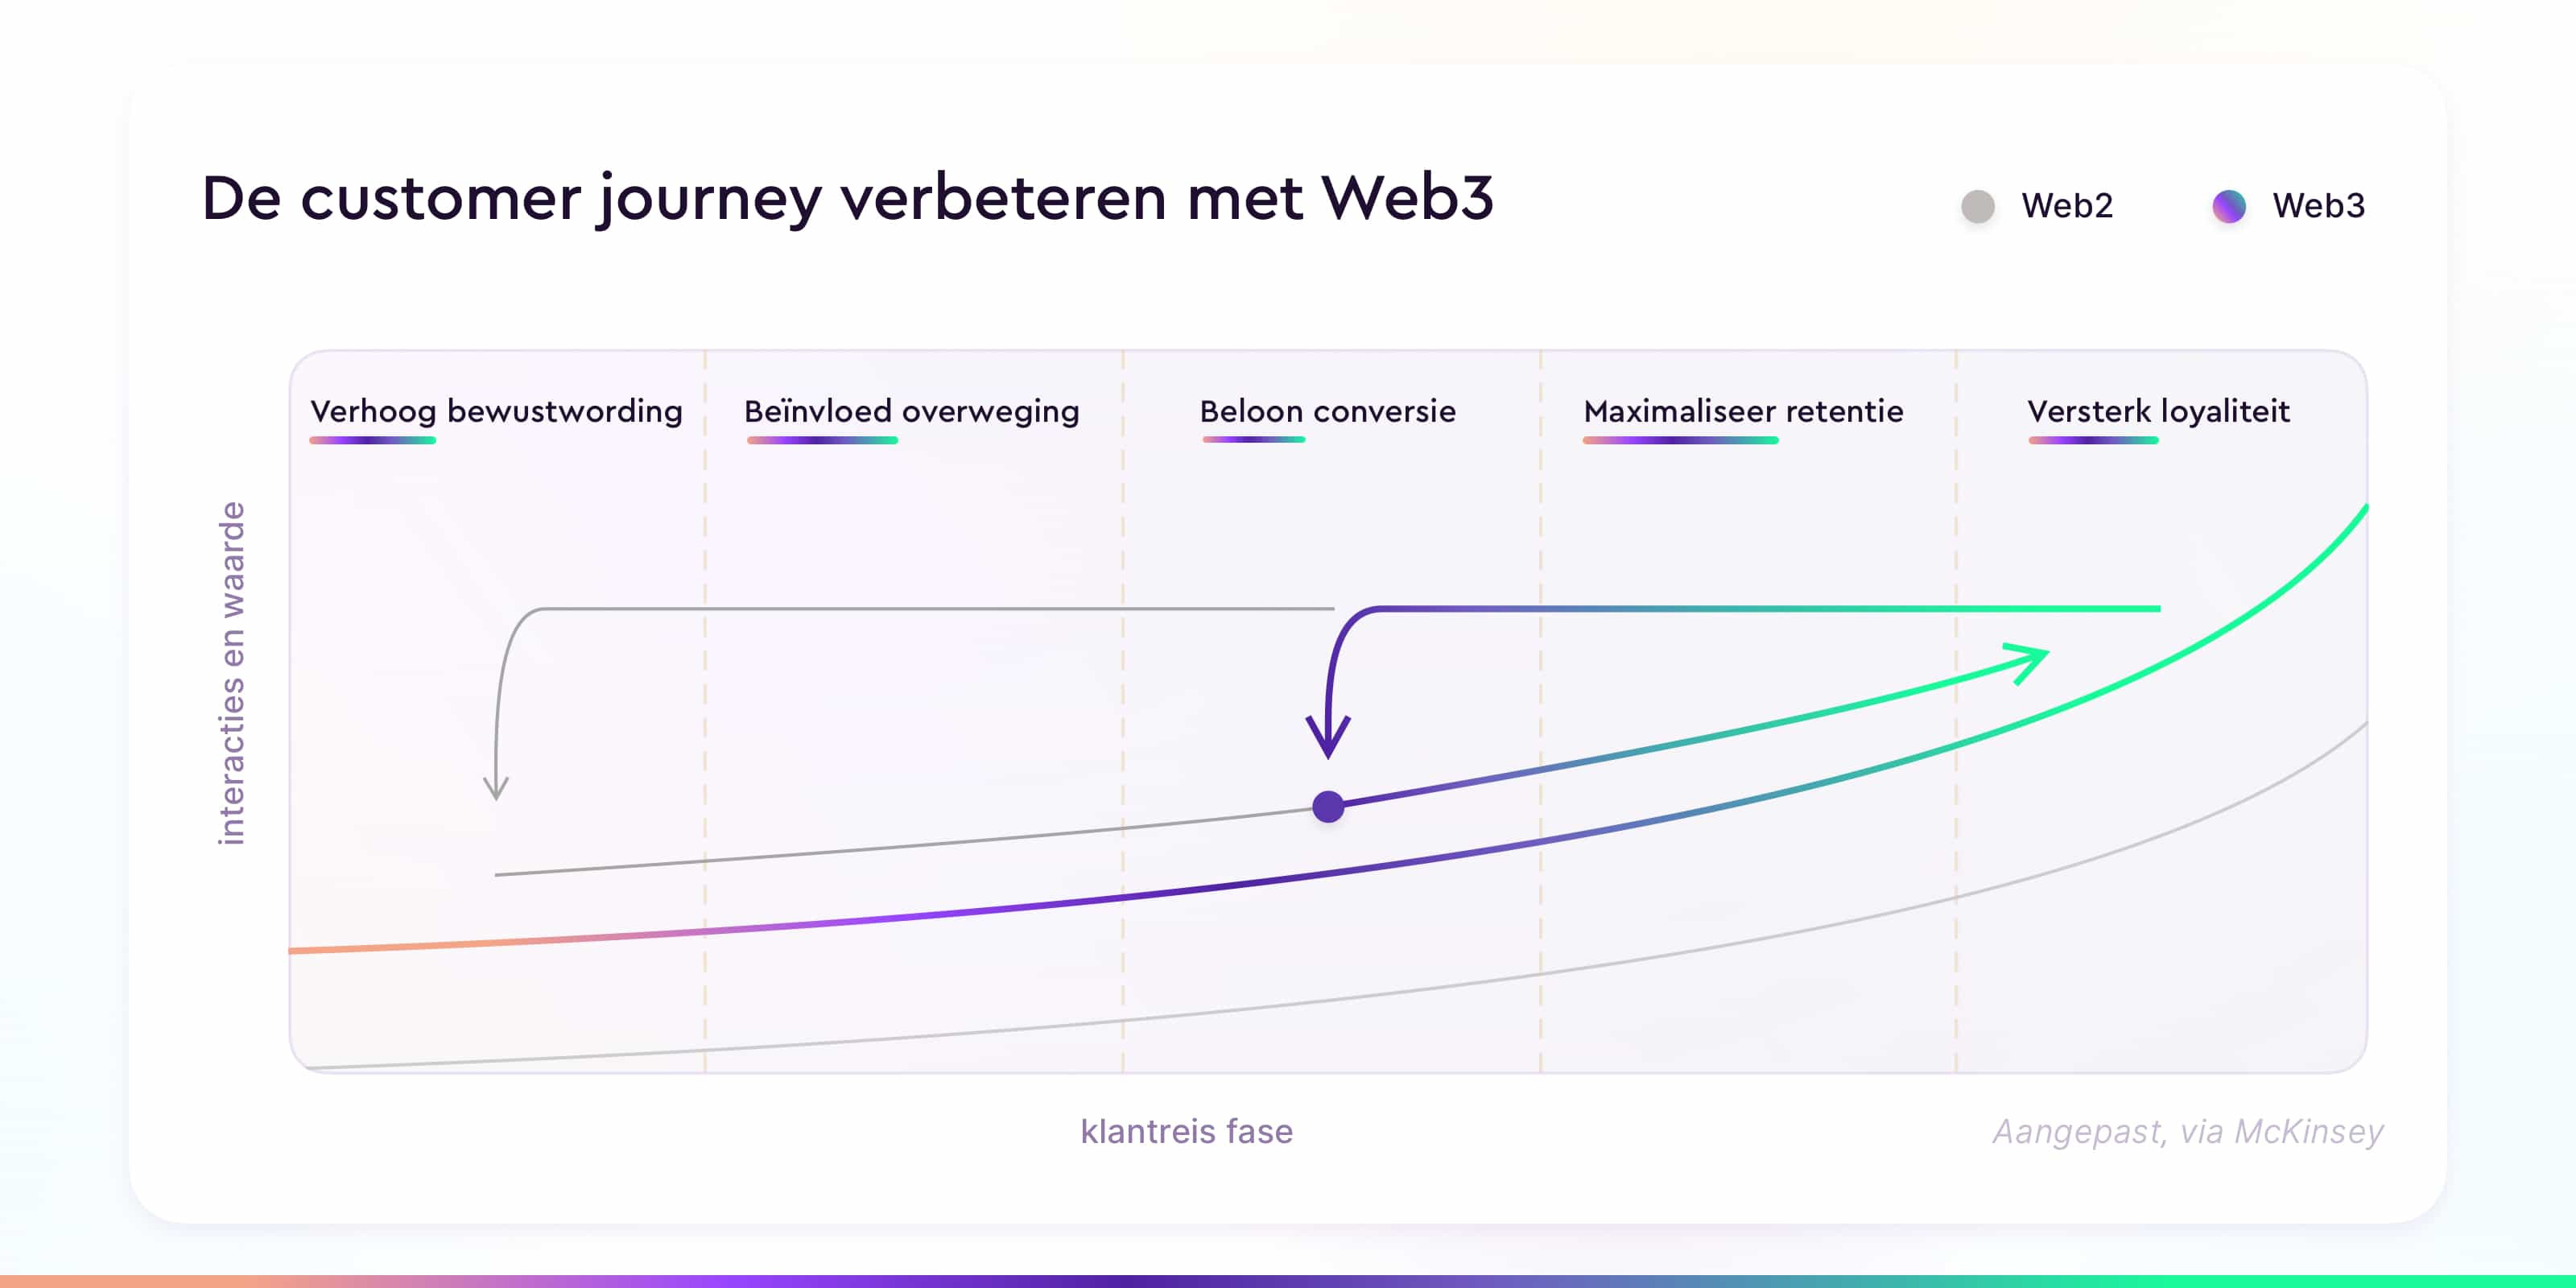 de customer journey verbeteren met web3